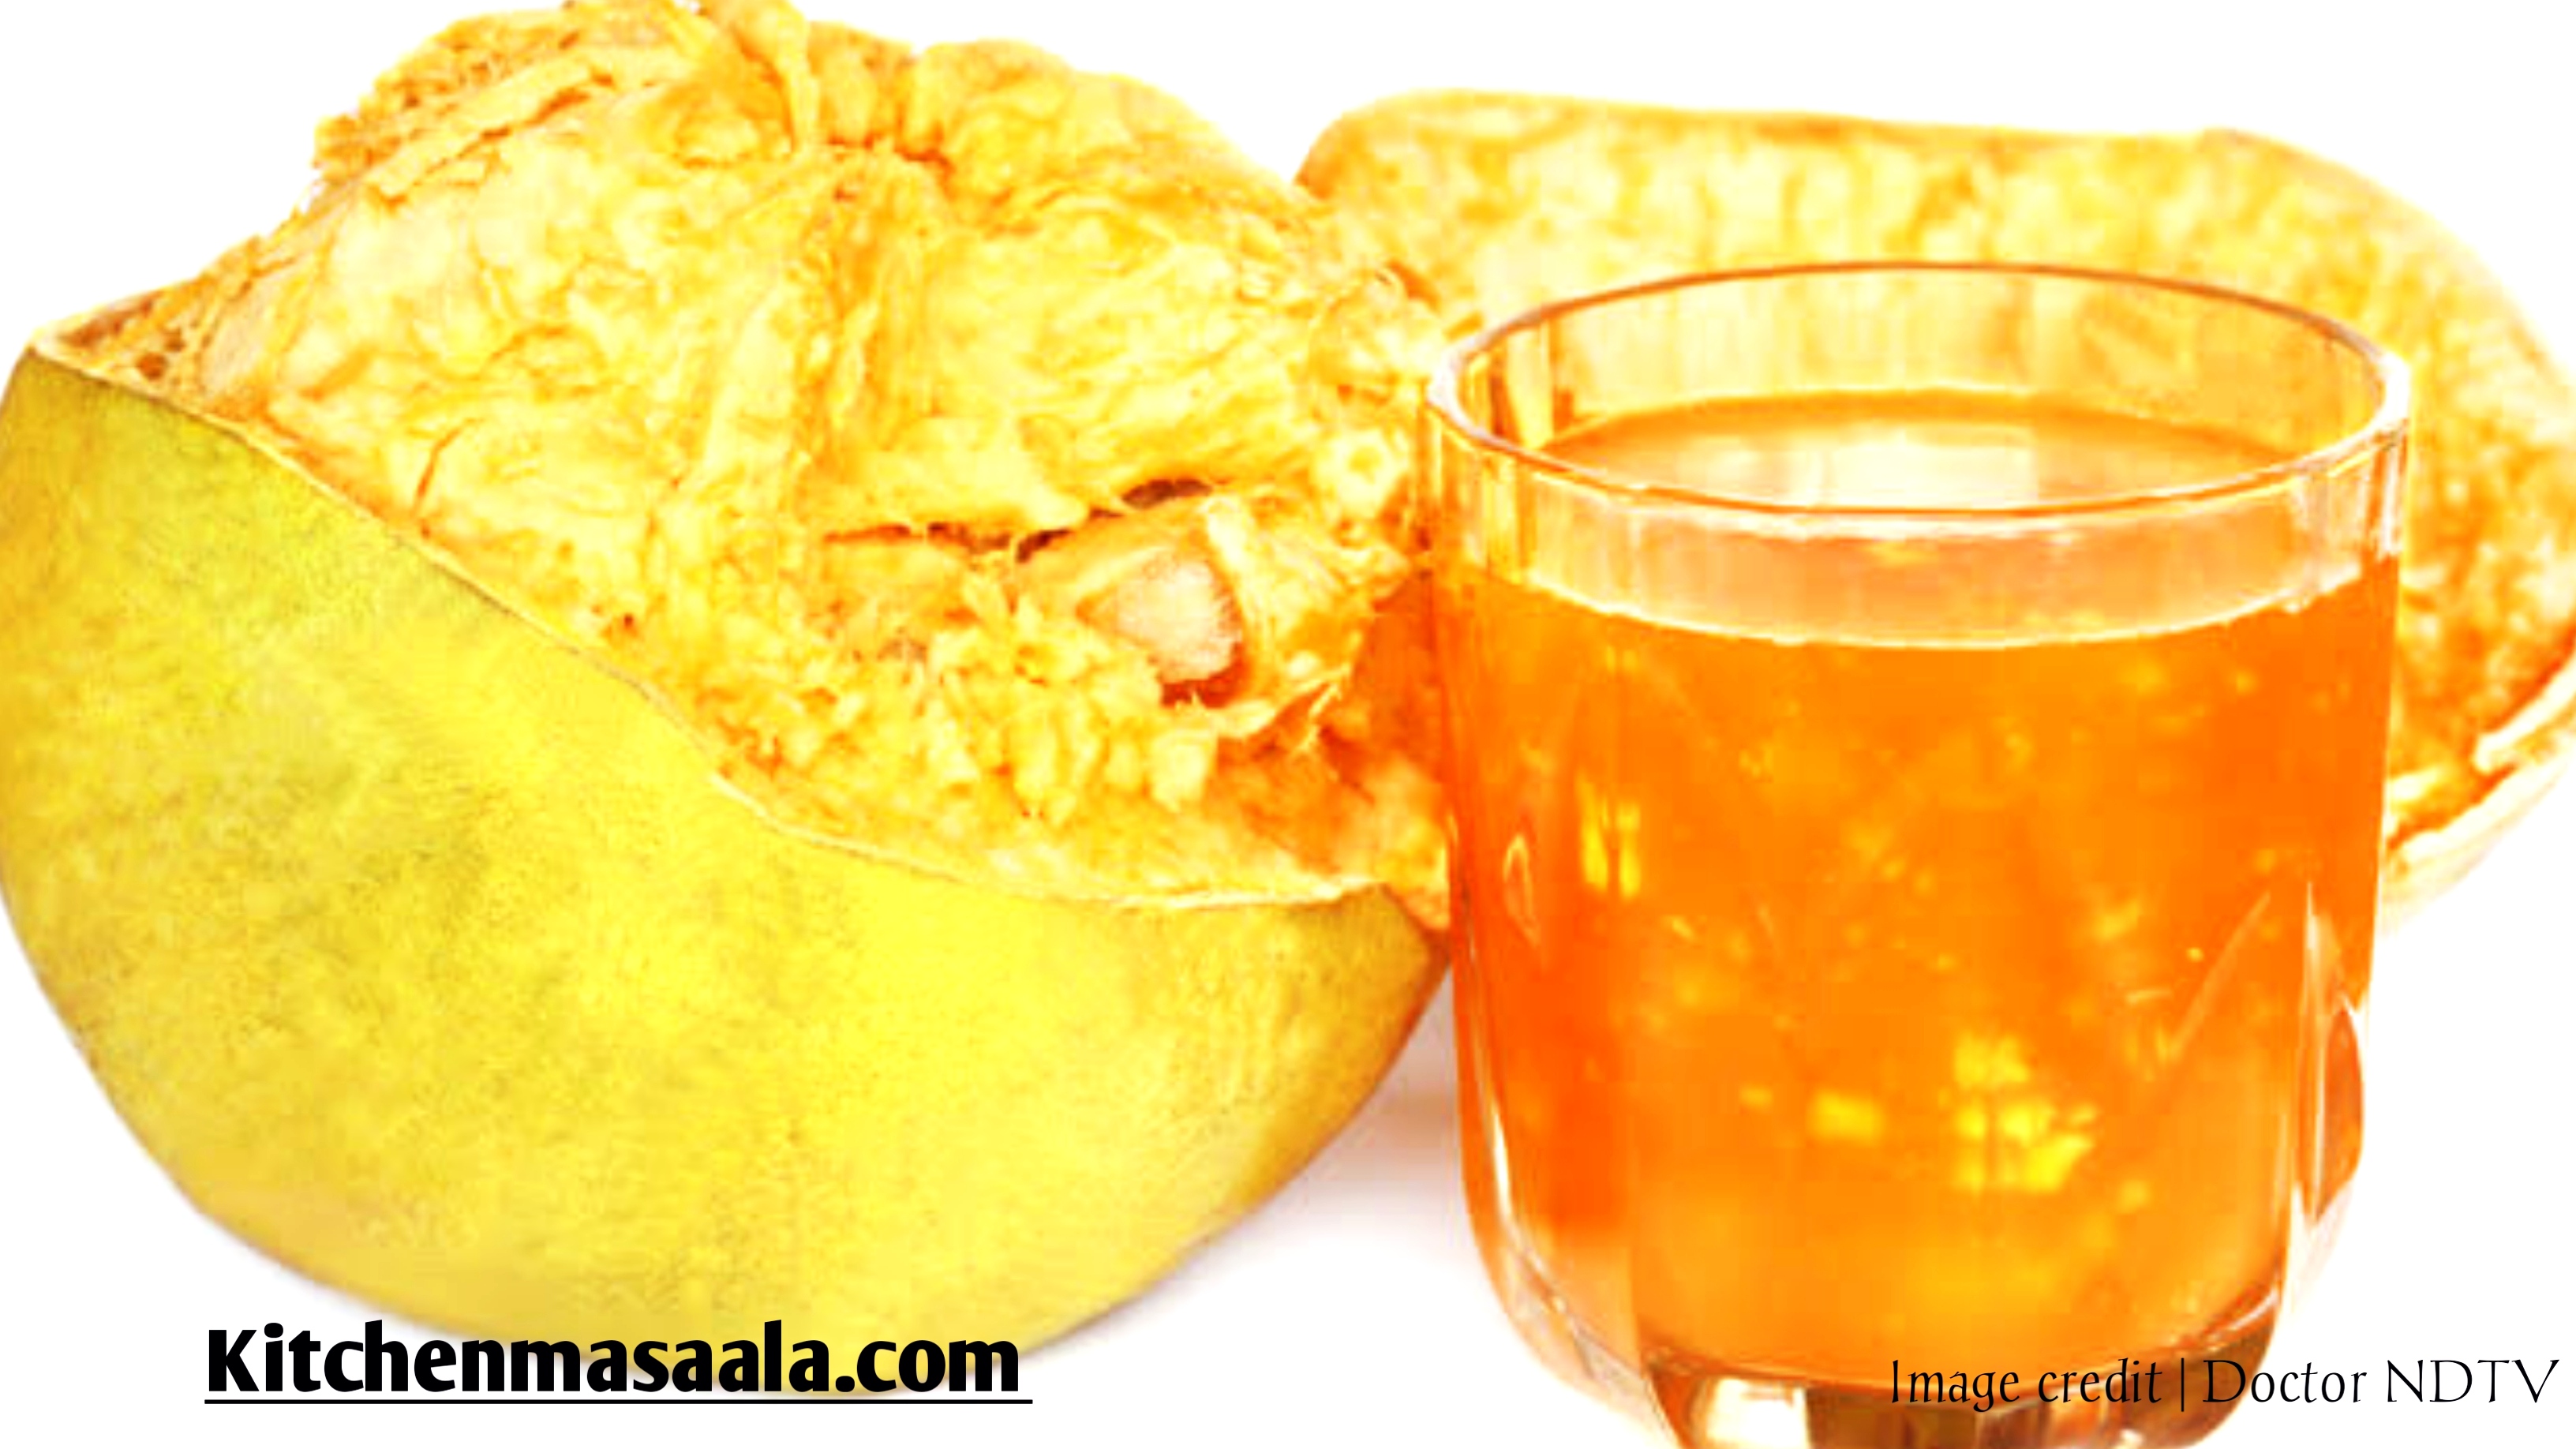 बेल का जूस बनाने की विधि || Bel ka juice Recipe in Hindi, Wood apple juice image, बेल का जूस फोटो